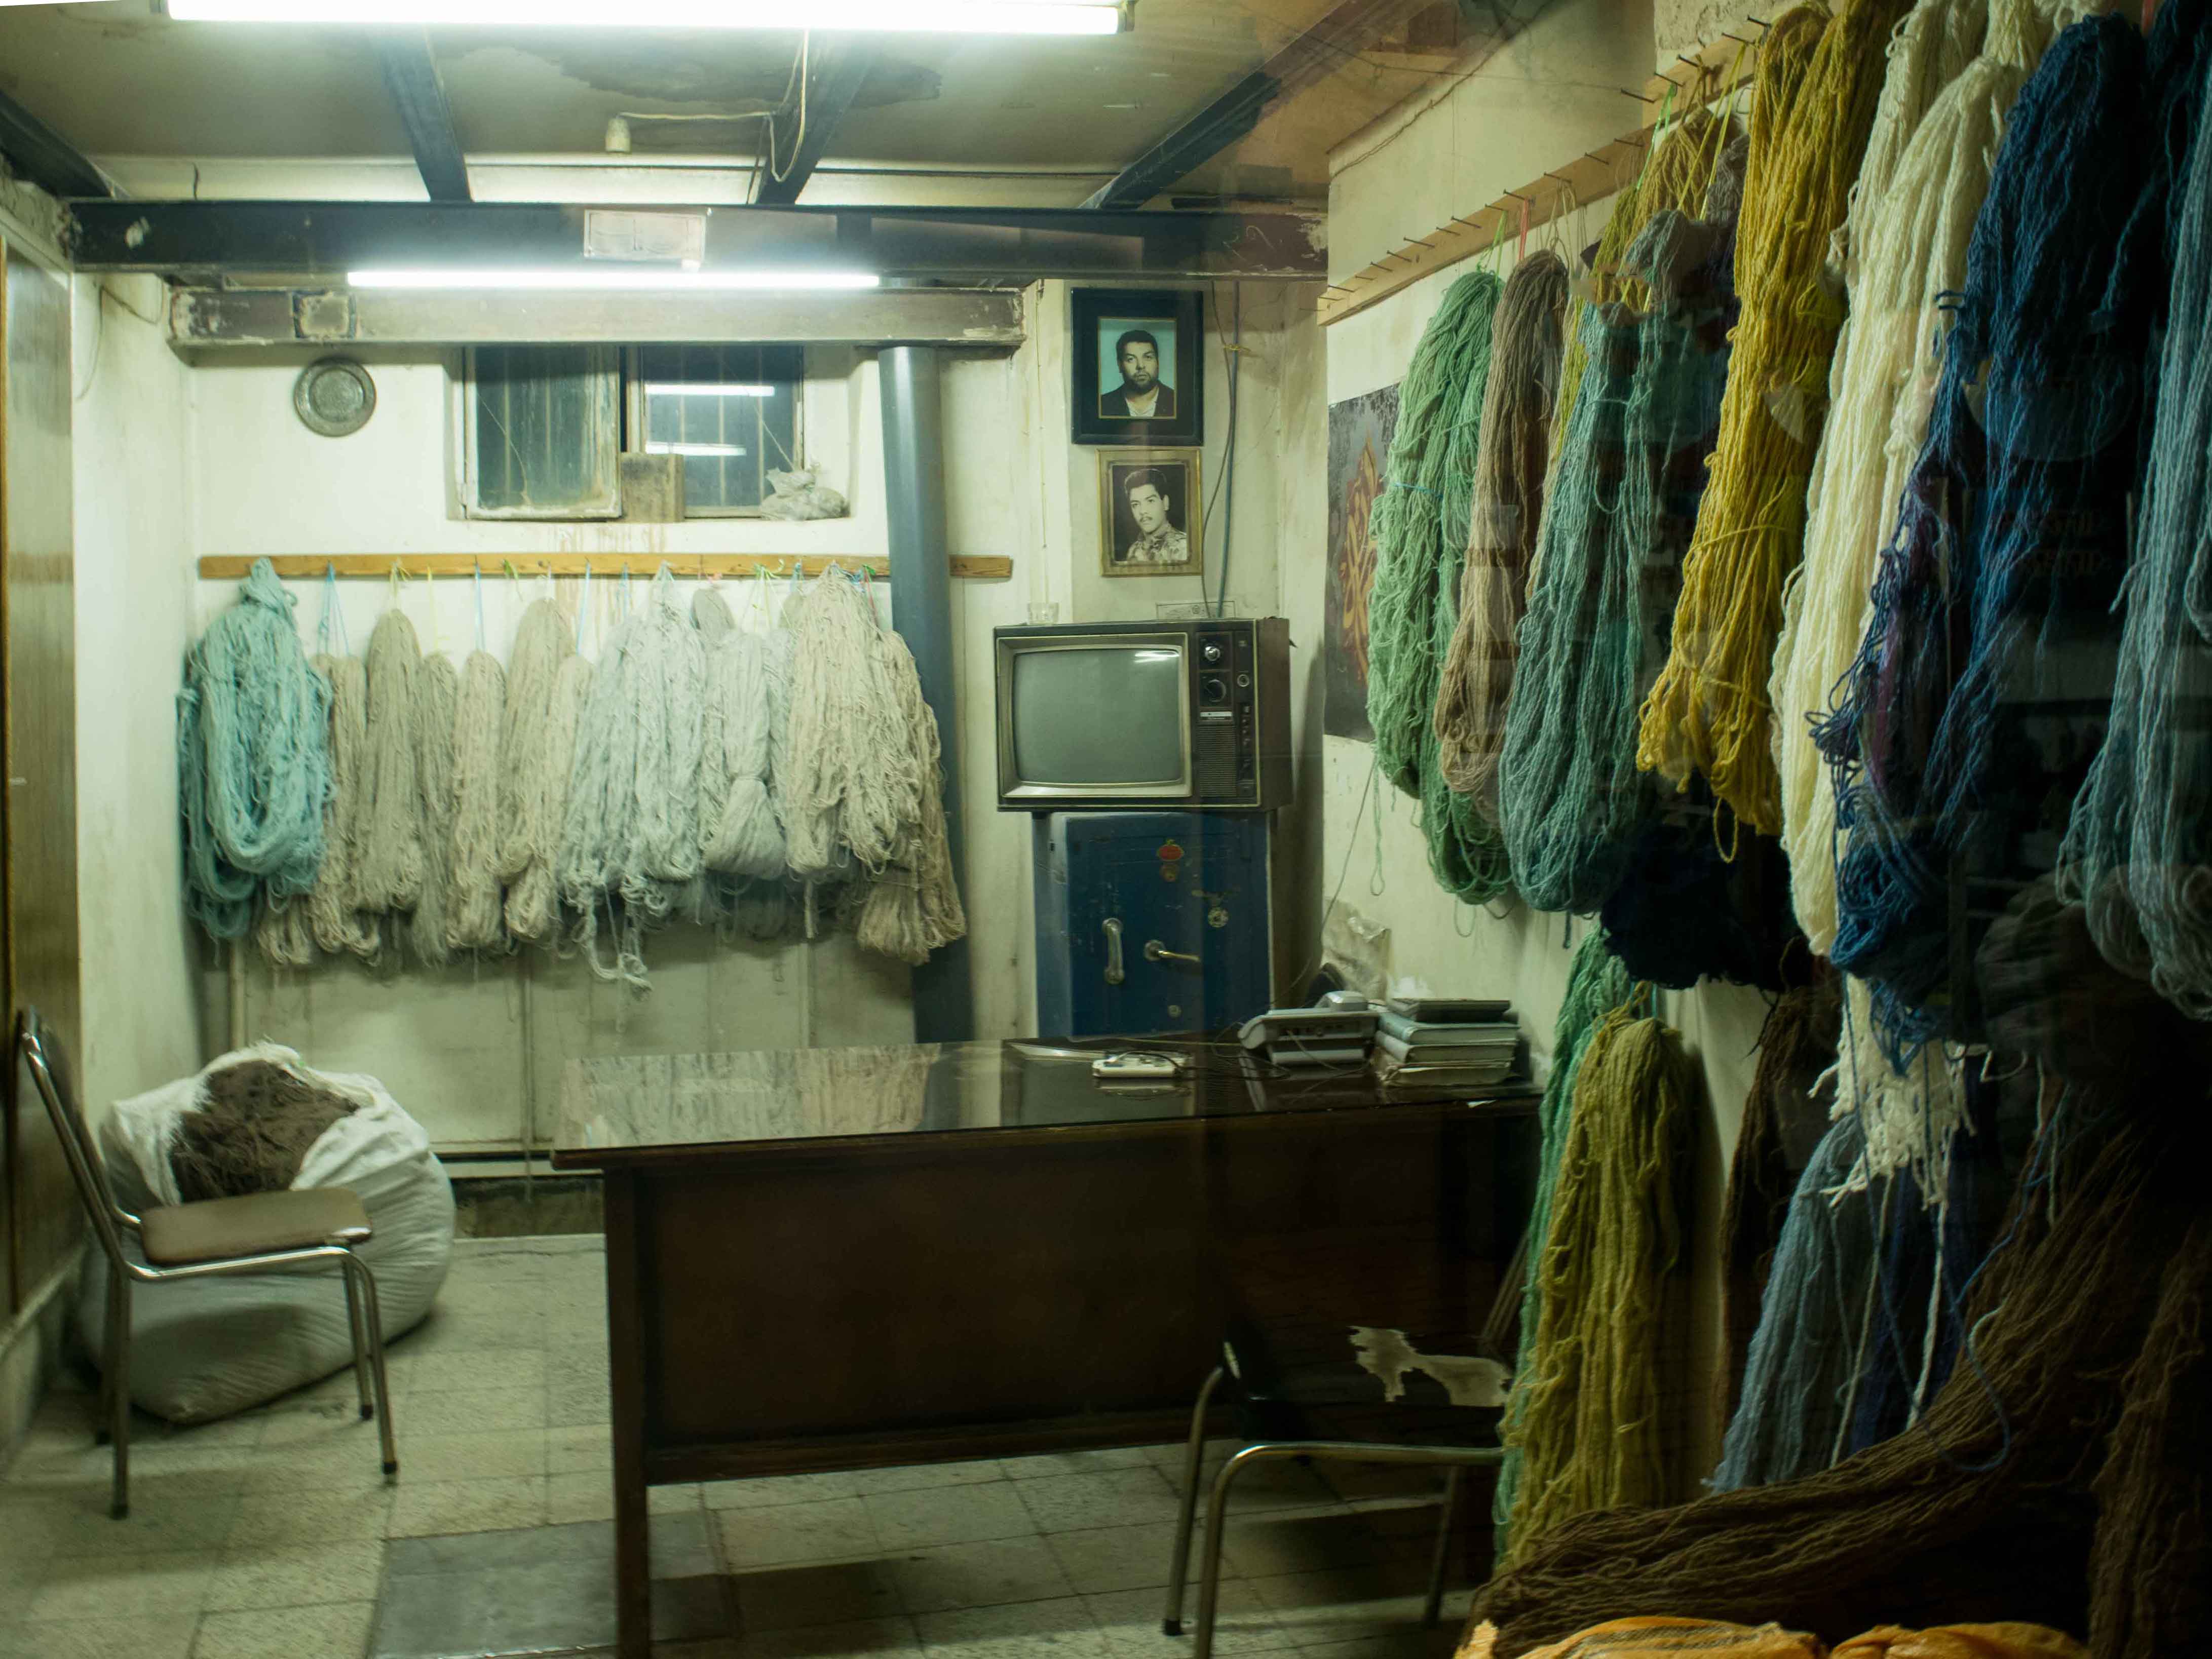 Comprar no Irã: loja de fios tingidos para produção de tapete persa.